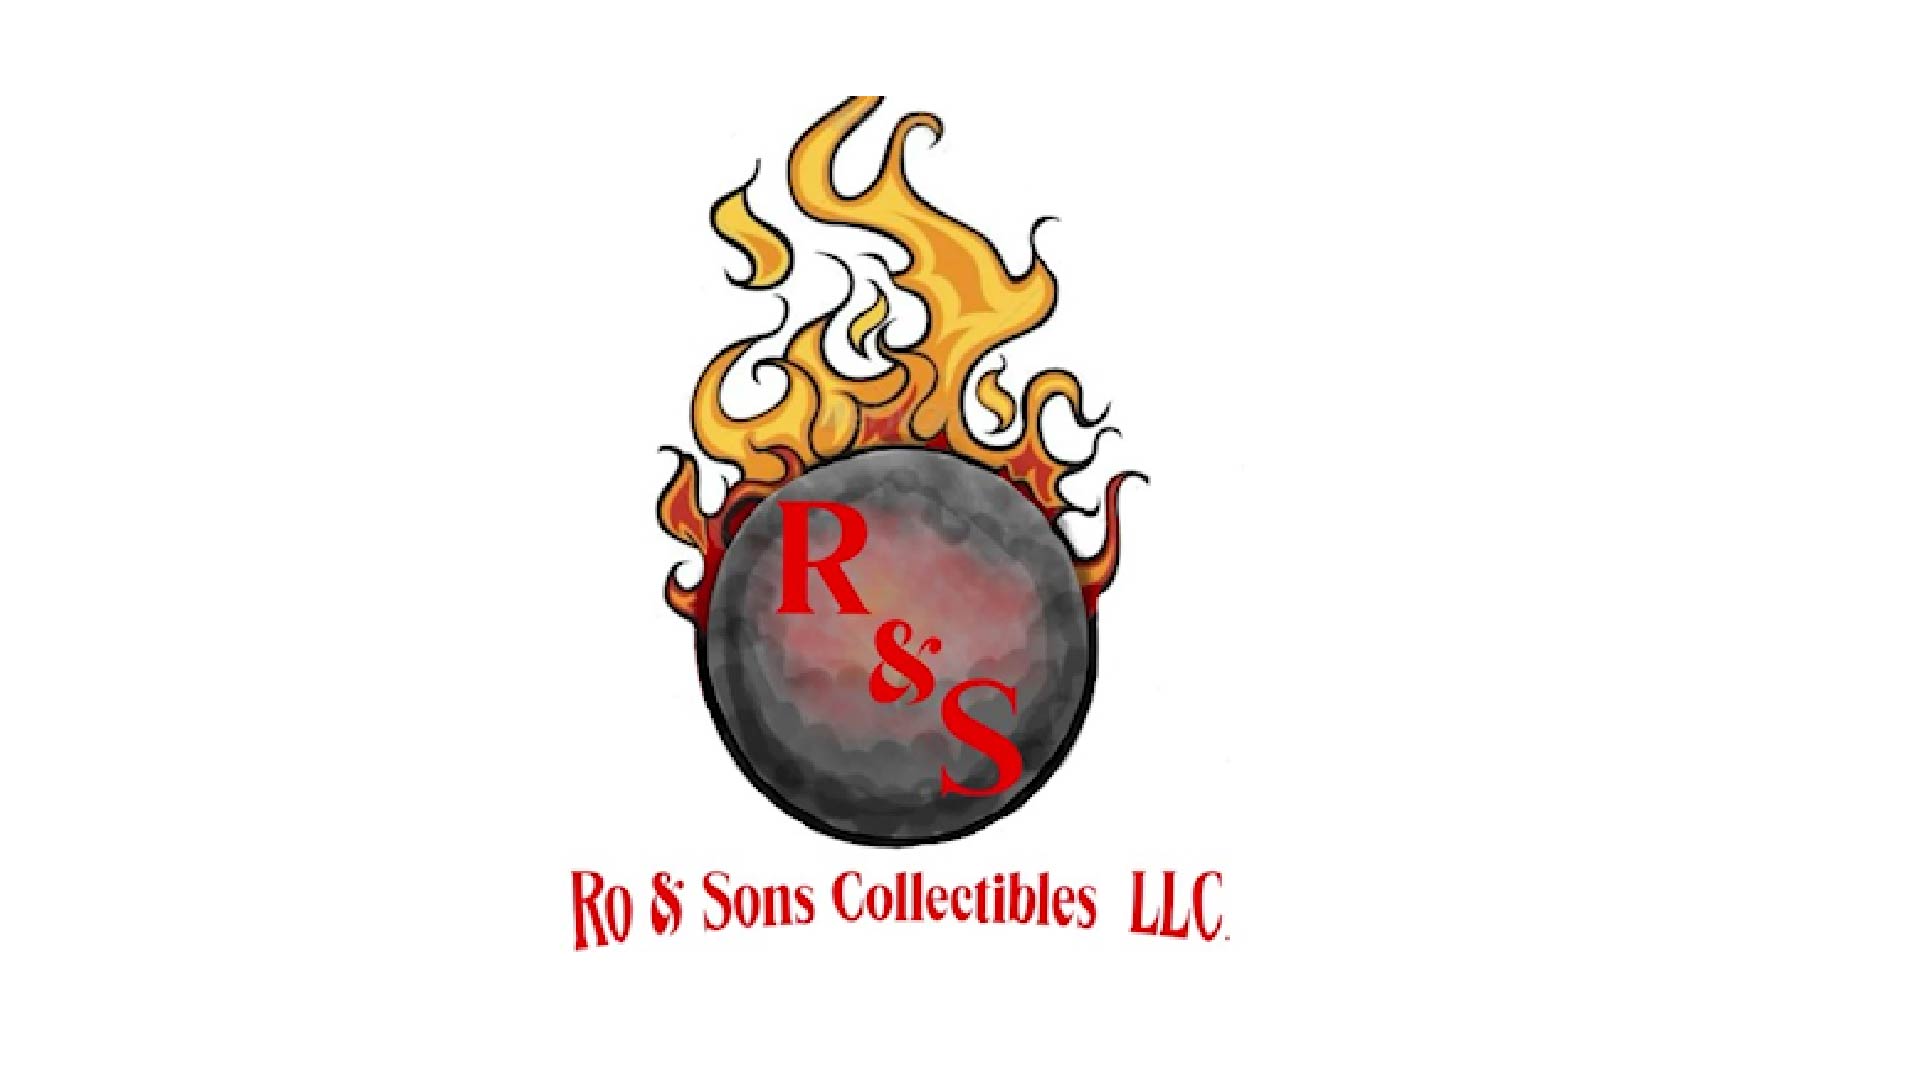 Vendor-Logos-169_RO-AND-SONS-COLLECTIBLES